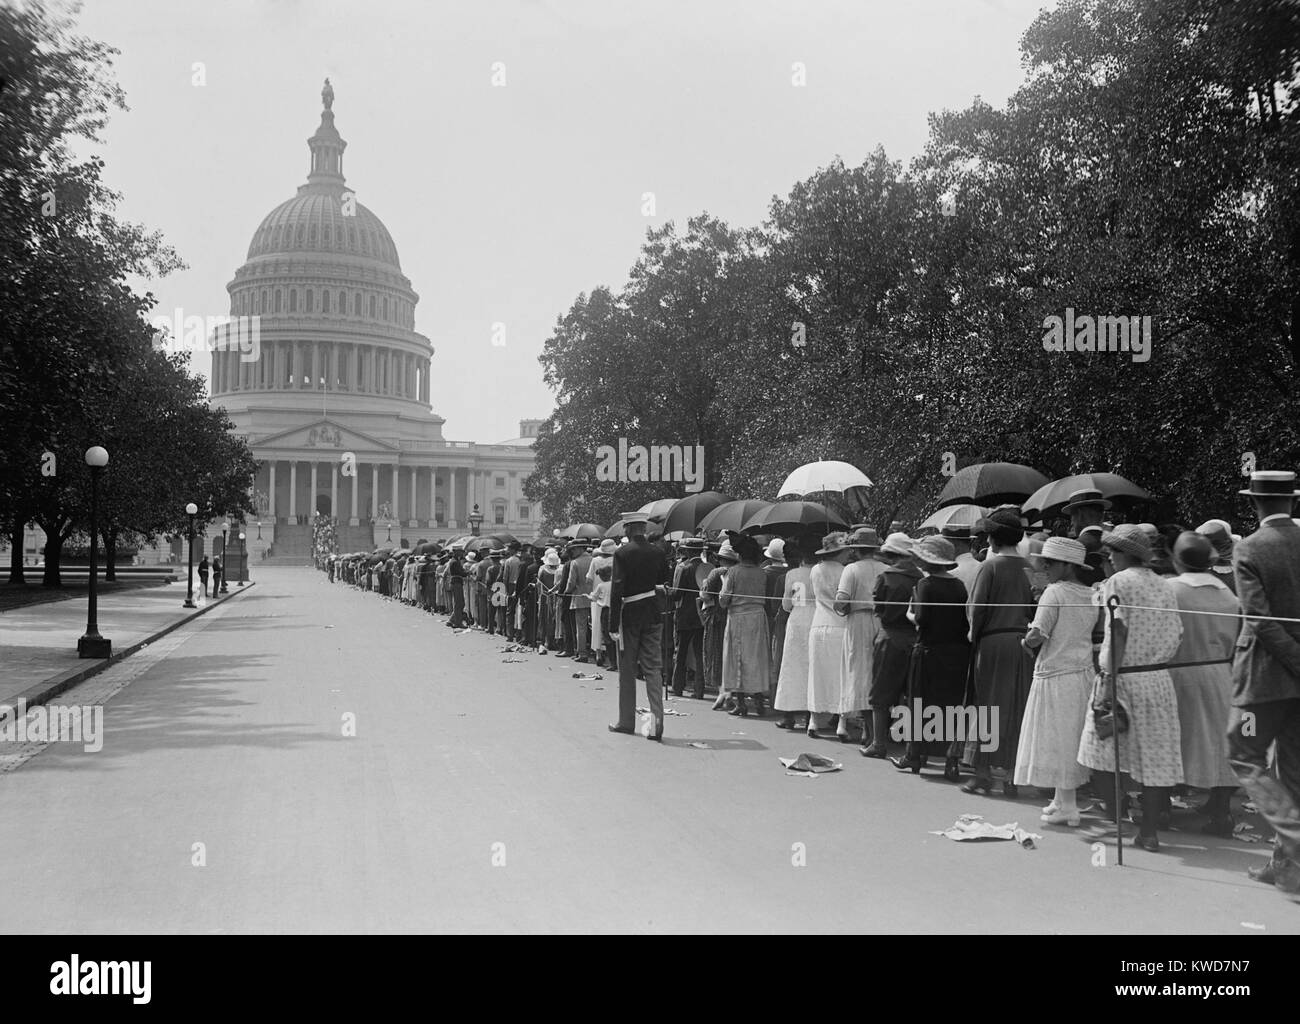 Die Menschen in der langen Schlange warten Respekt zu Präsident Warren Harding im August 1923 zu zahlen. Harding am 12.08.2 starb, und lag im Zustand im Capitol es vor seiner Beerdigung am 8. August. (BSLOC 2015 16 11) Stockfoto